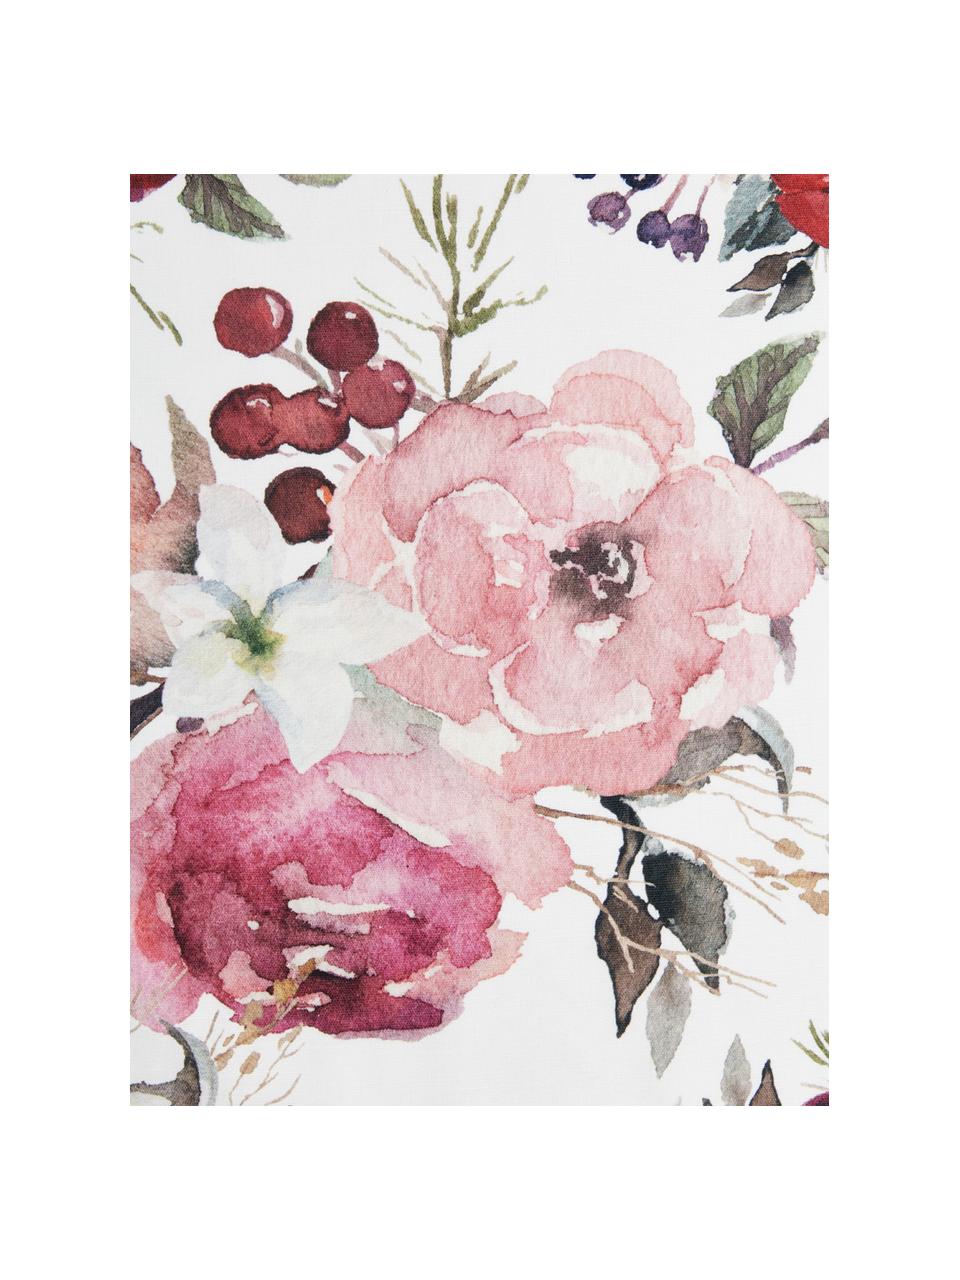 Katoenen tafelloper Florisia met bloemen motief, 100% katoen, Roze, wit, lila, groen, B 50 x L 160 cm